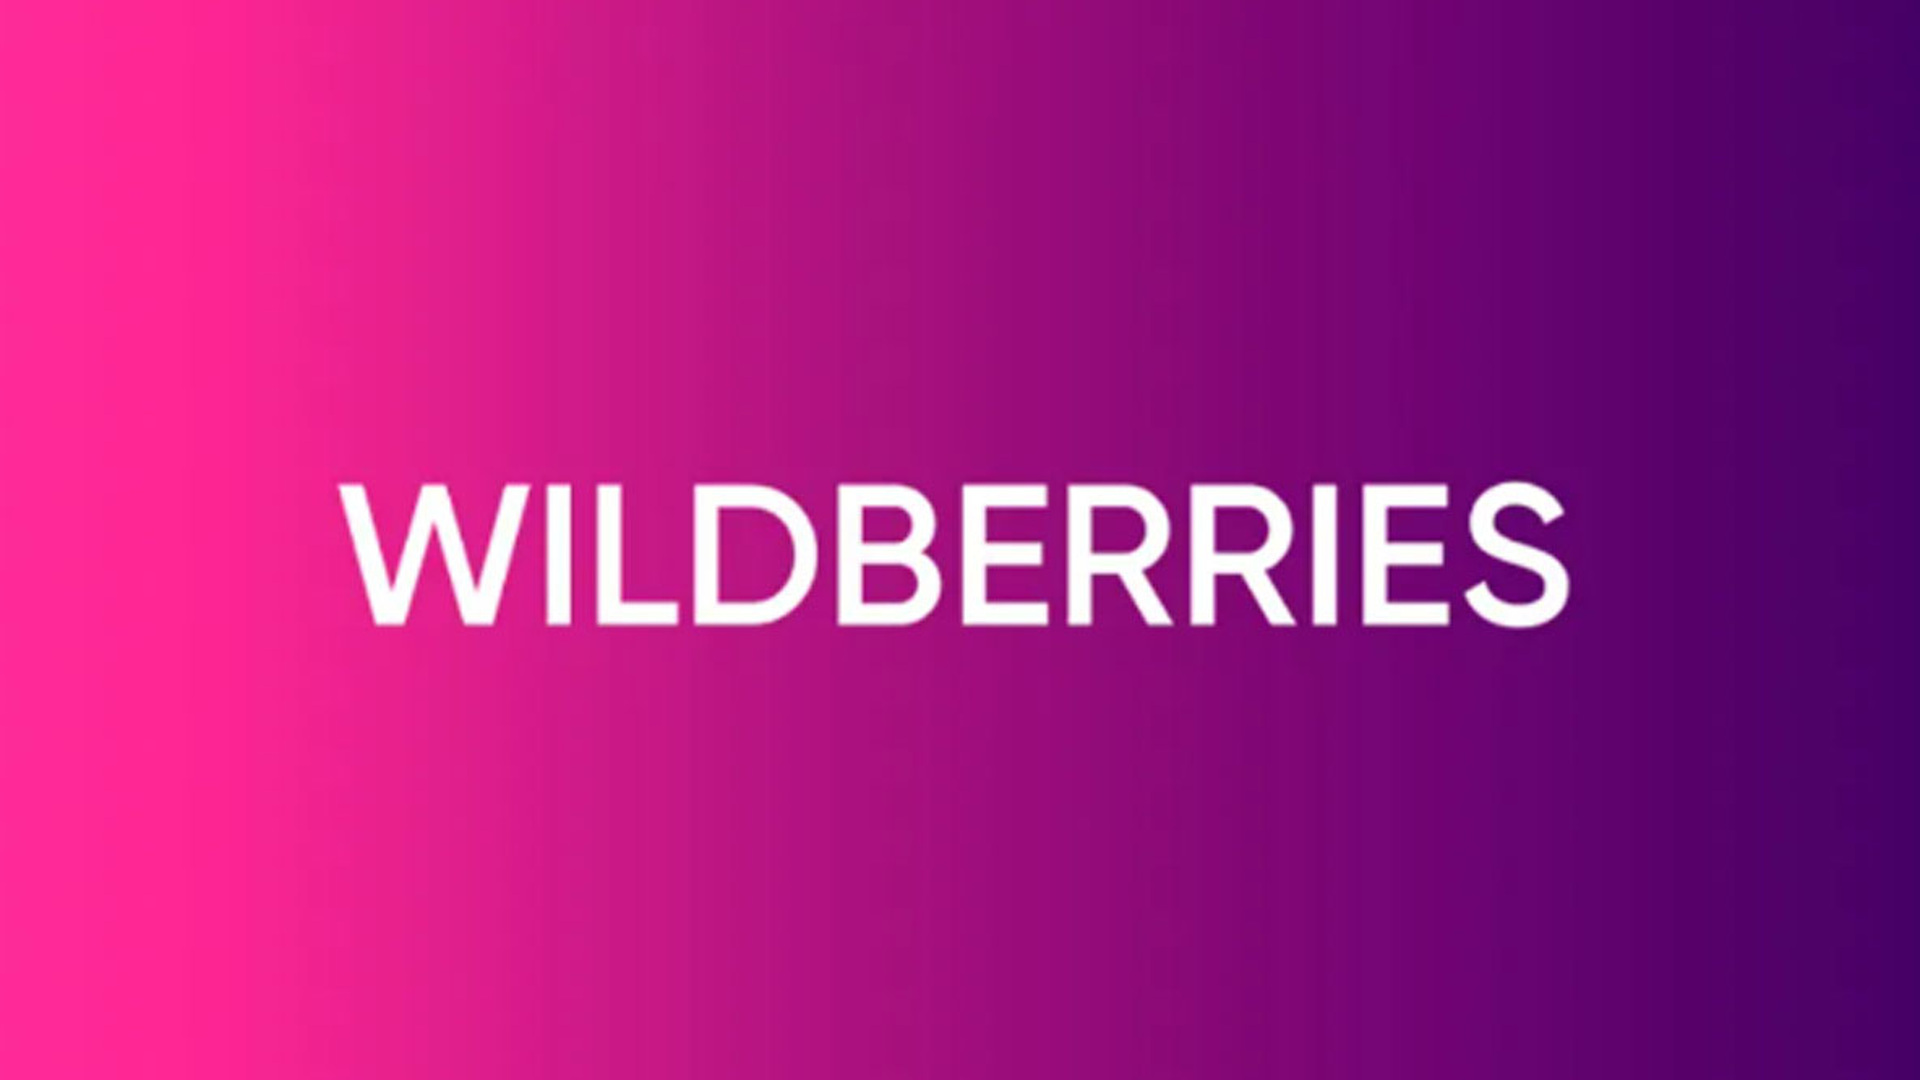  1   Wildberries    